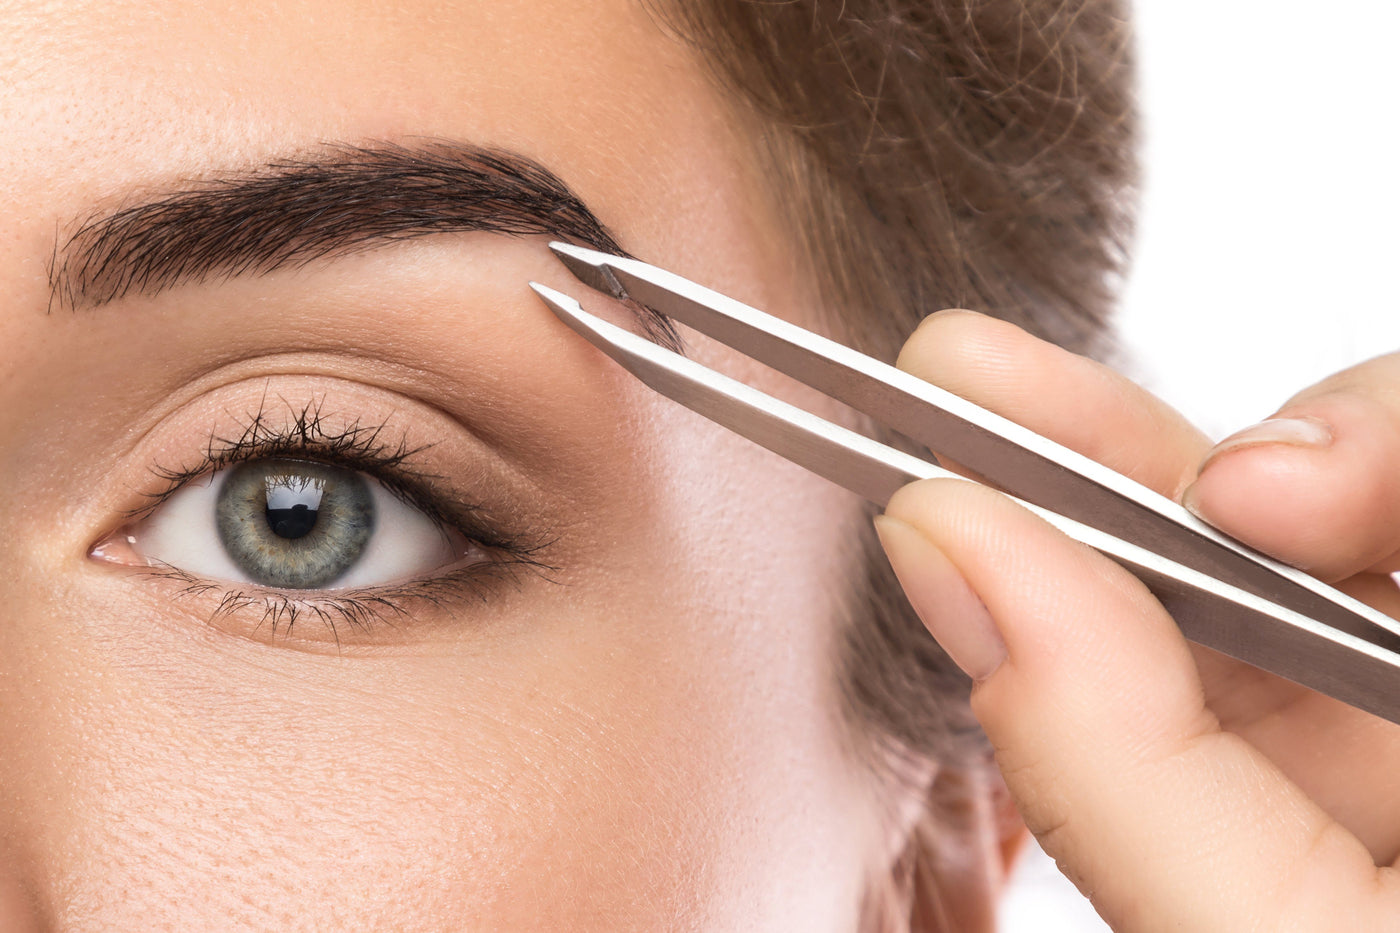 Regine Tweezers world's best tweezer eyebrow grooming hair remover pincer